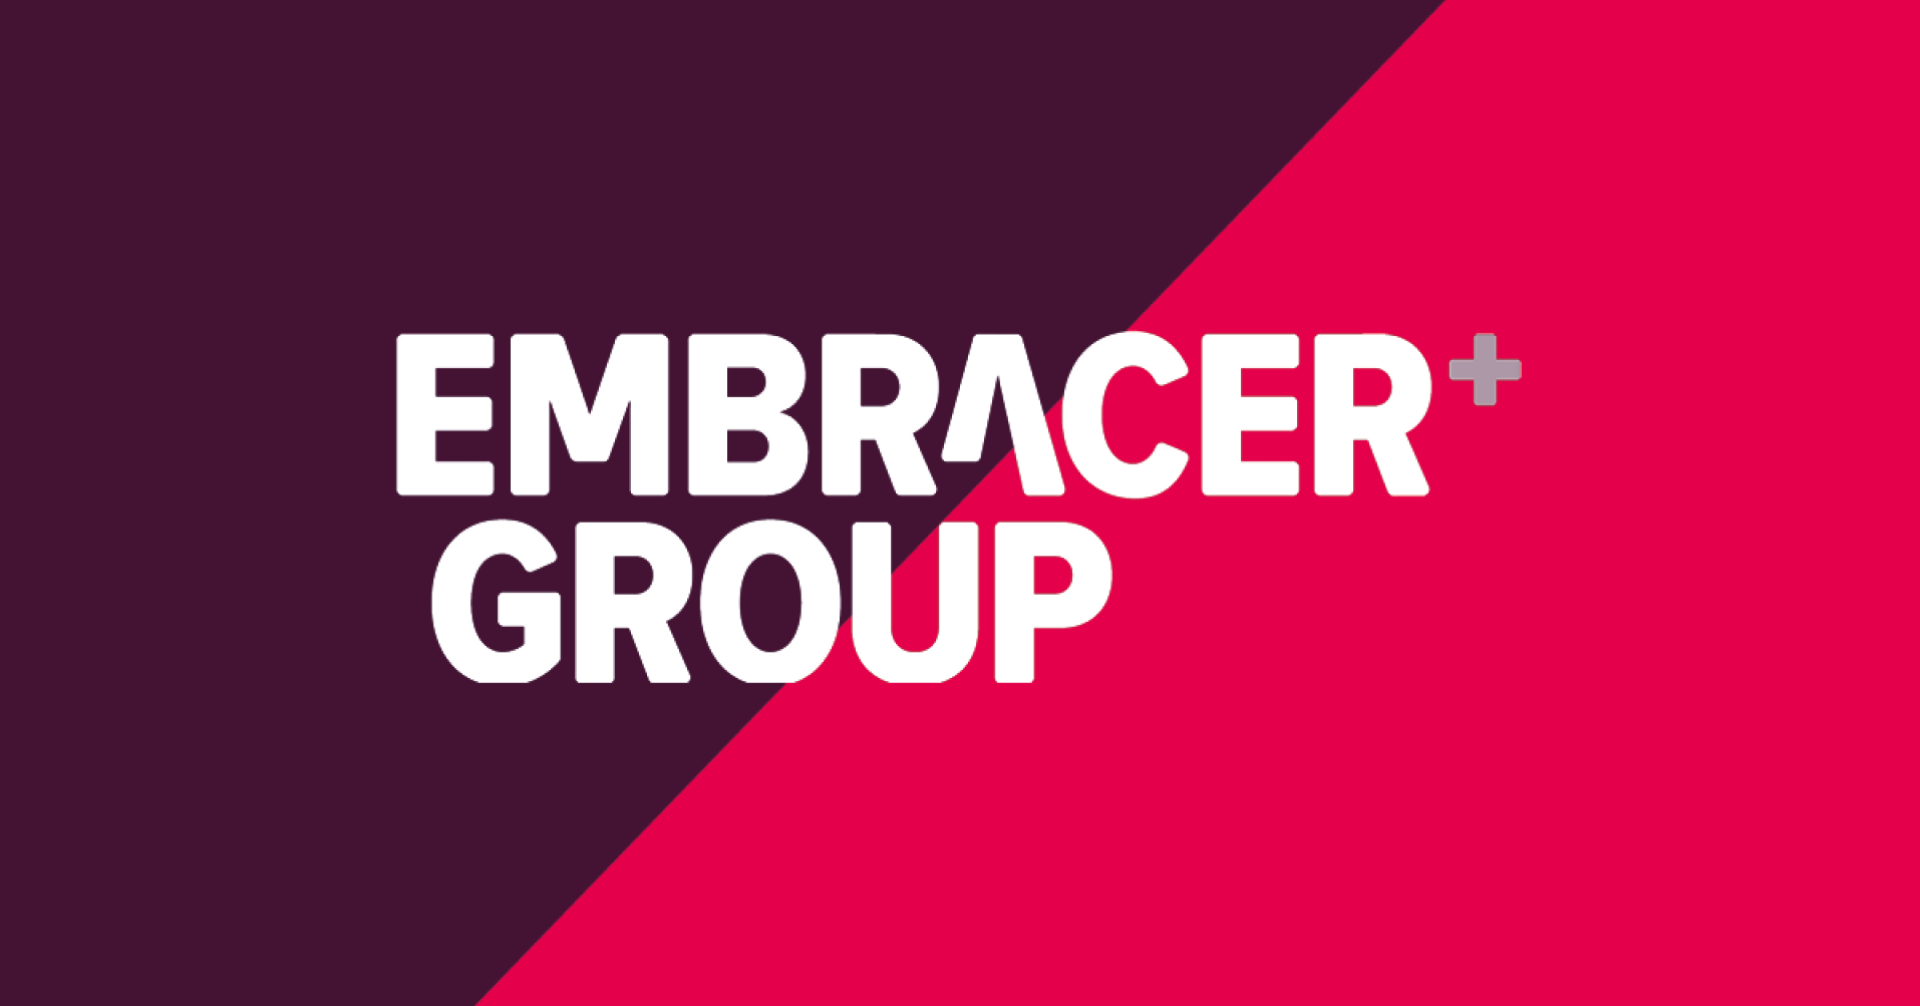 Embracer Group ยืนยันว่าการเข้าซื้อหุ้นของซาอุดีอาระเบียจะไม่มีผลต่อการบริหารงาน